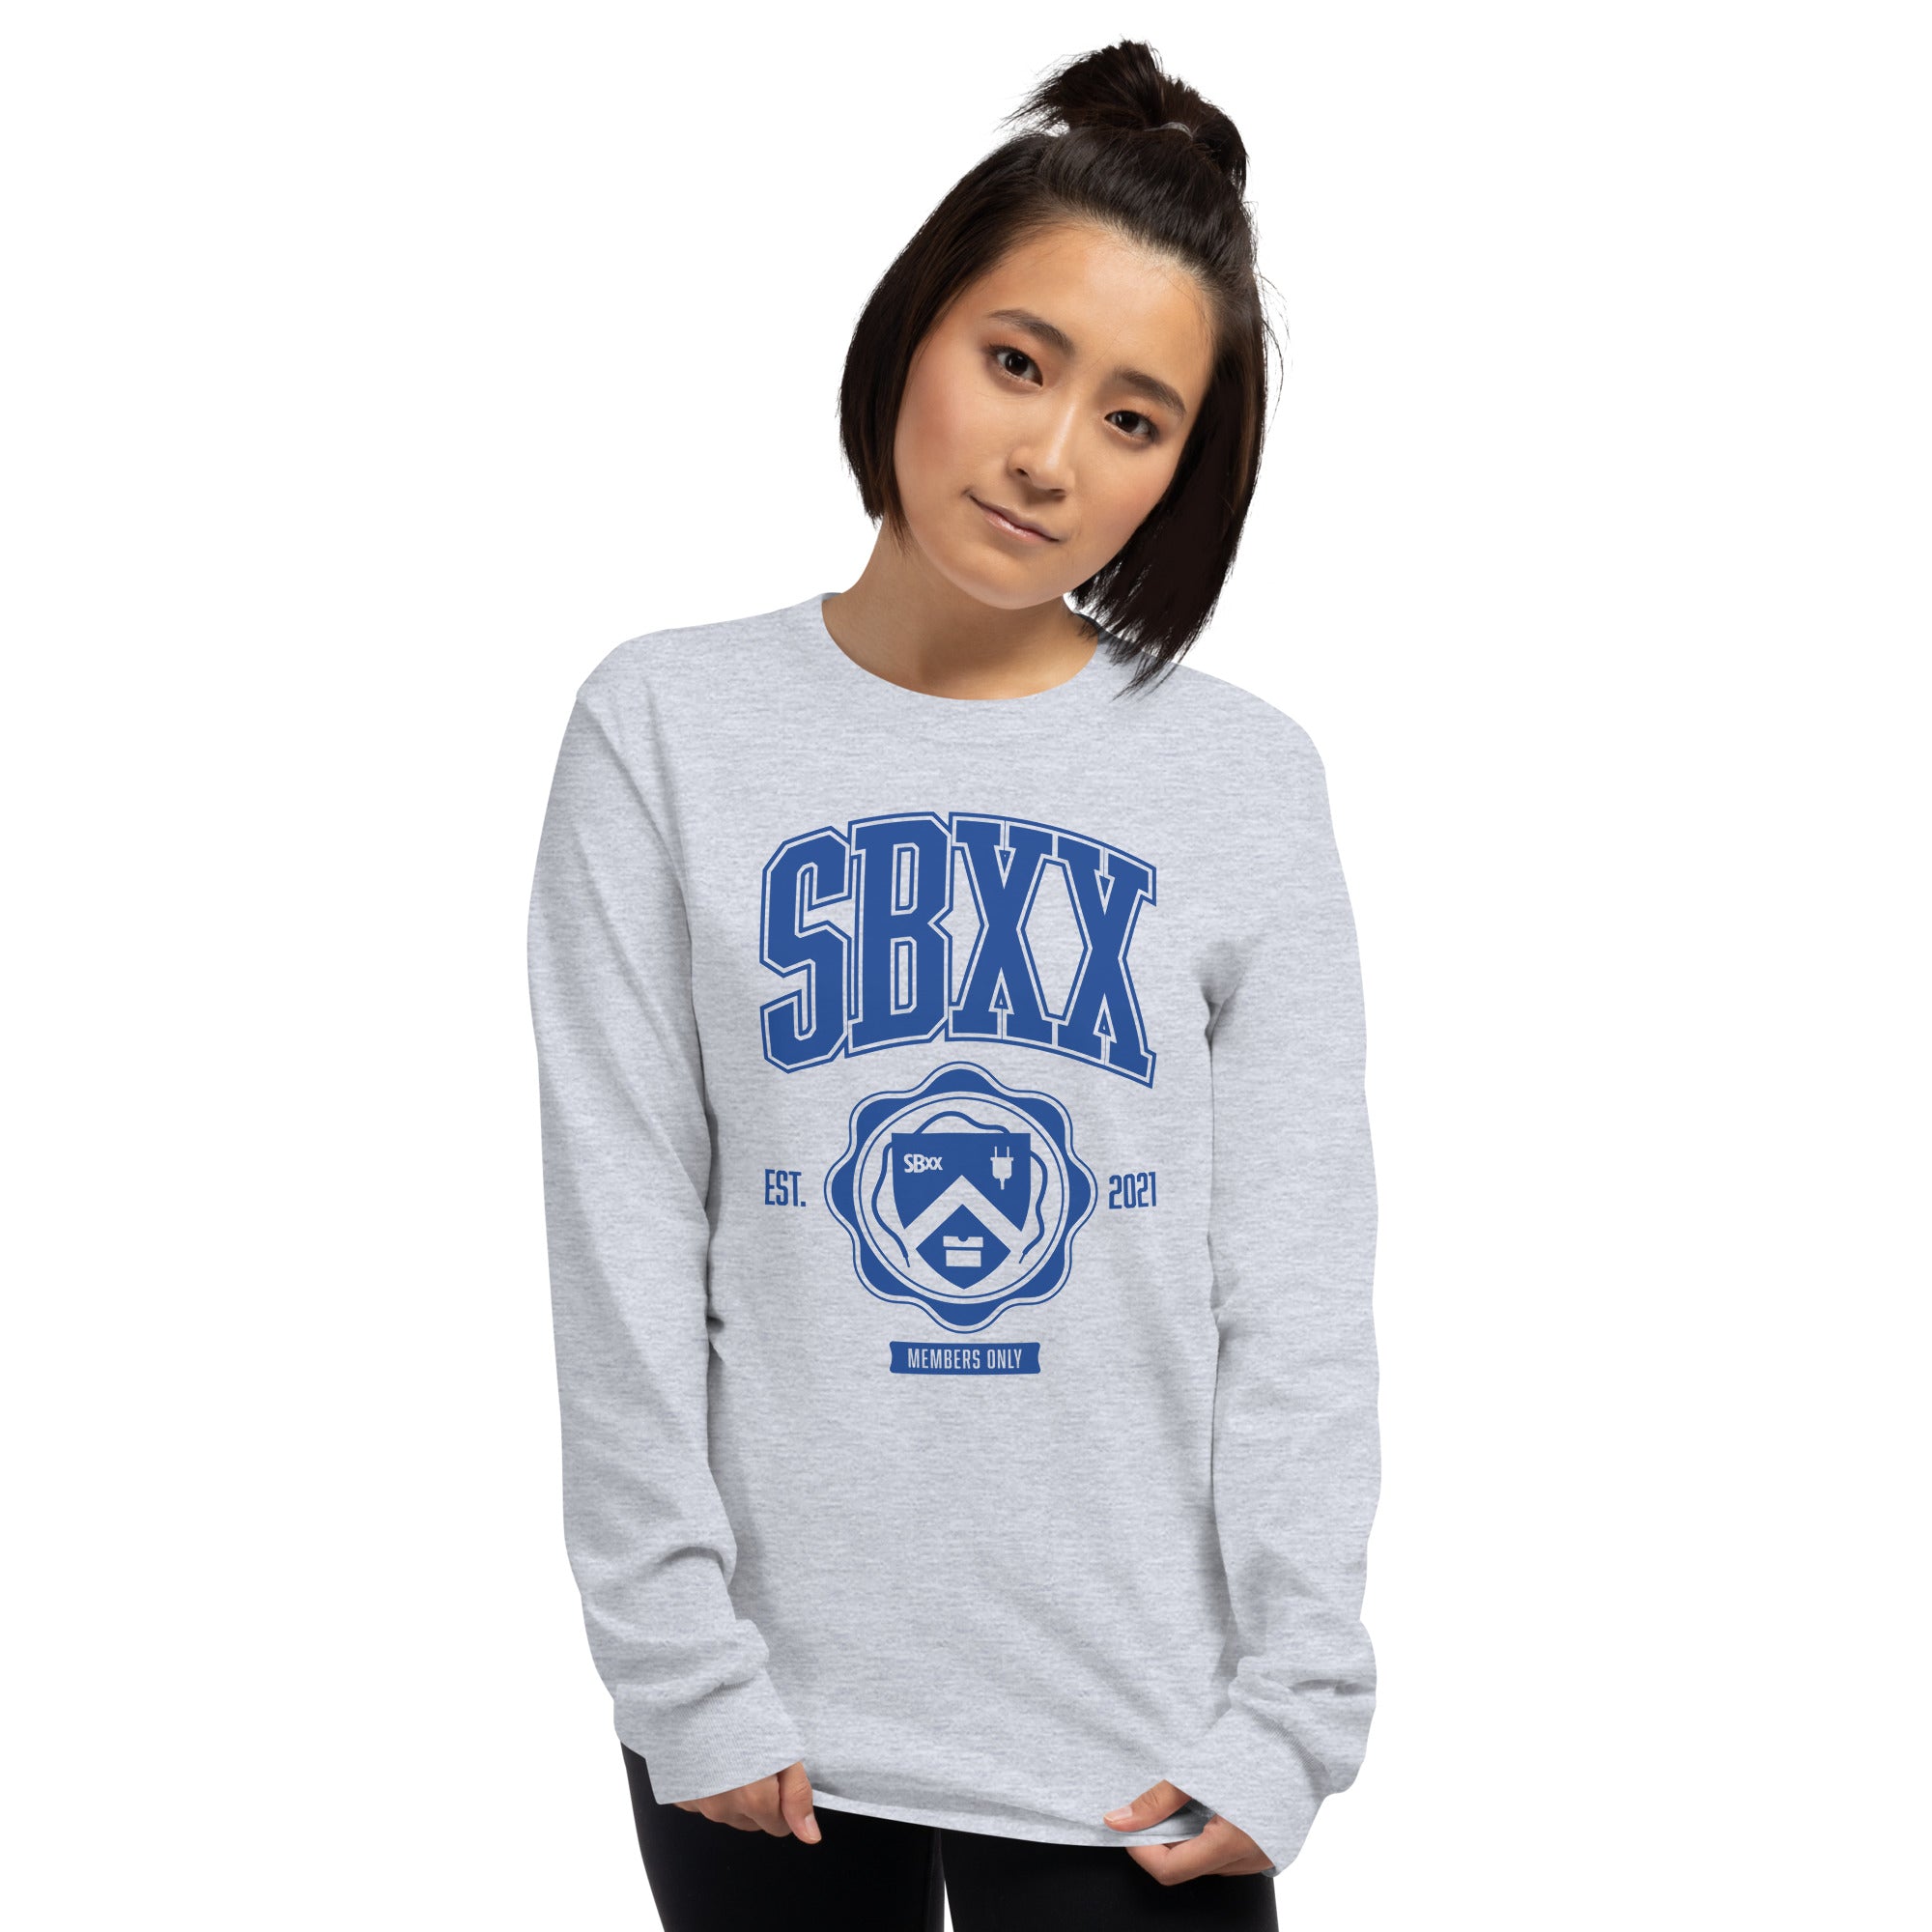 SBxx College Crest Long Sleeve Unisex Shirt